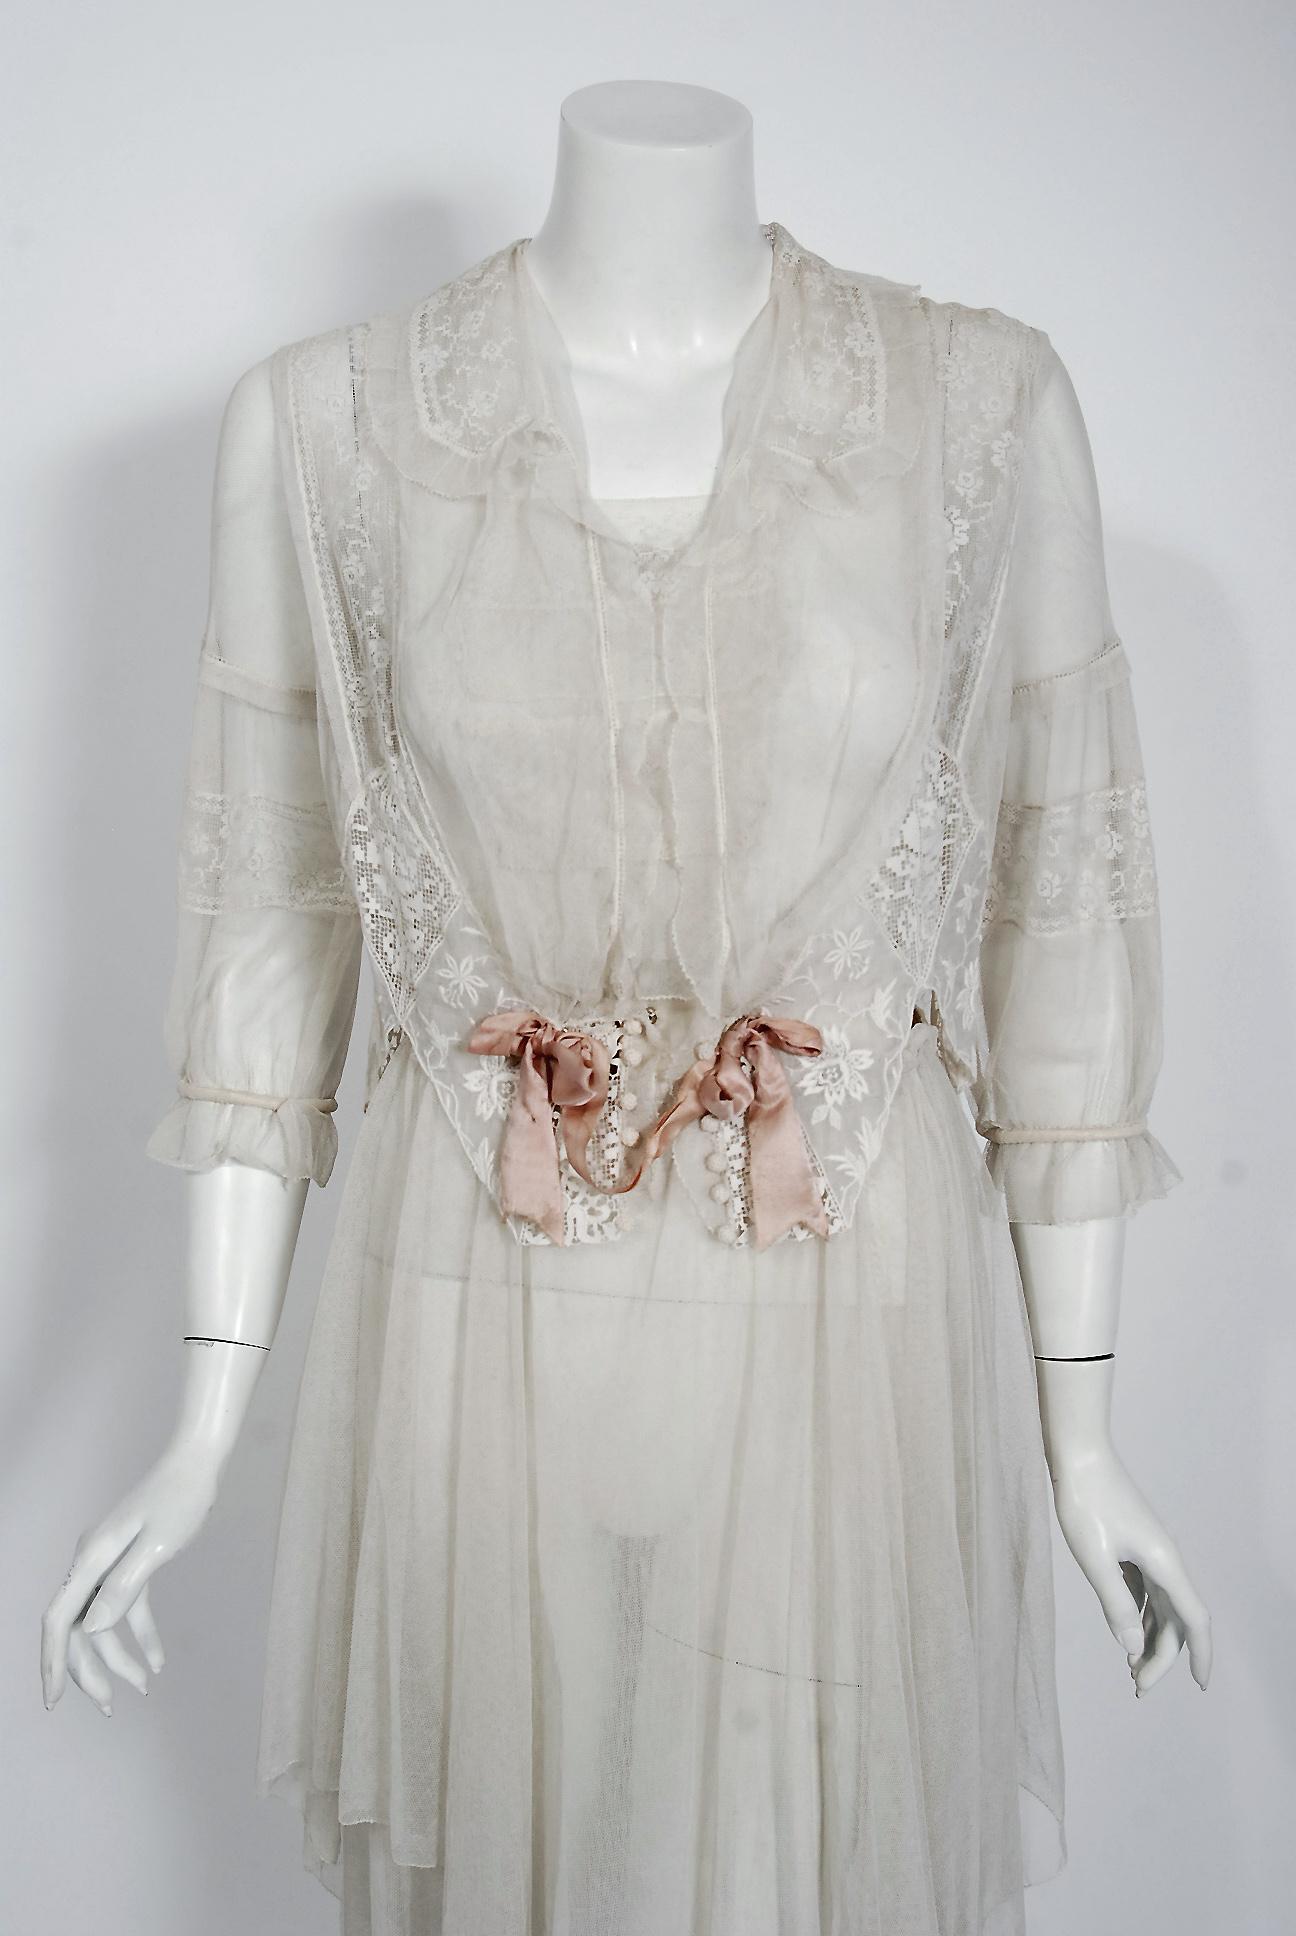 Romantische weiße Kleider aus dem frühen 20. Jahrhundert sind ein Dauerbrenner, und dieses hier ist ein echter Hingucker. Der komplette Couture-Stil des Kleides ist so modern; die feinen Stoffe sind eine Trove der Nadelkunst. Das Kleid besteht aus